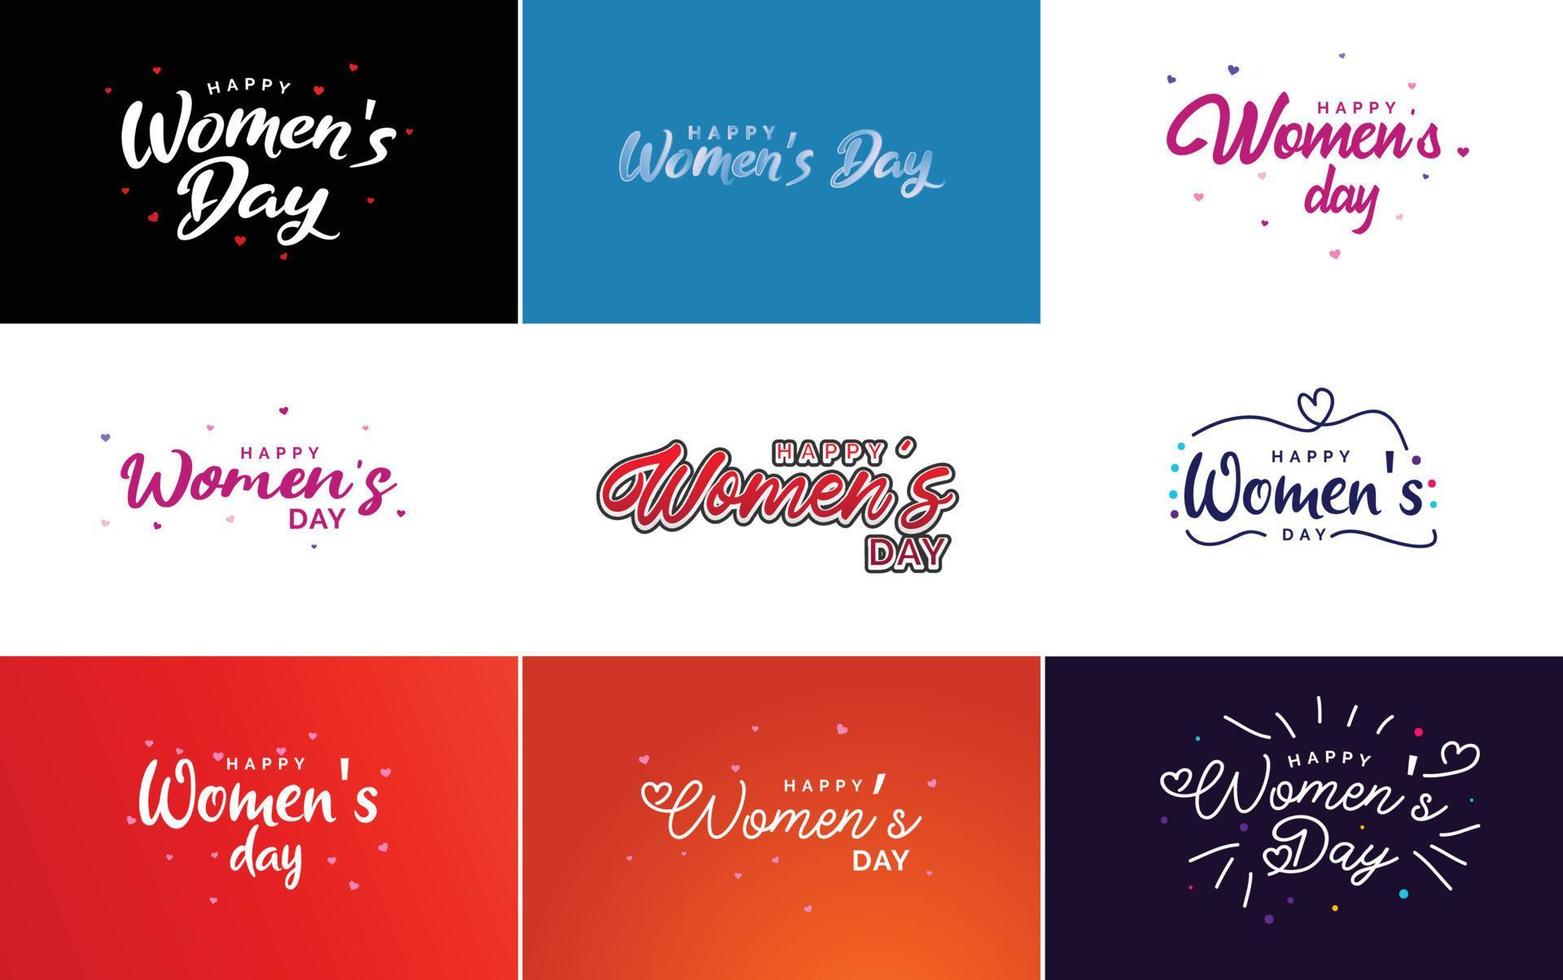 conjunto de cartões com o logotipo do dia internacional da mulher vetor